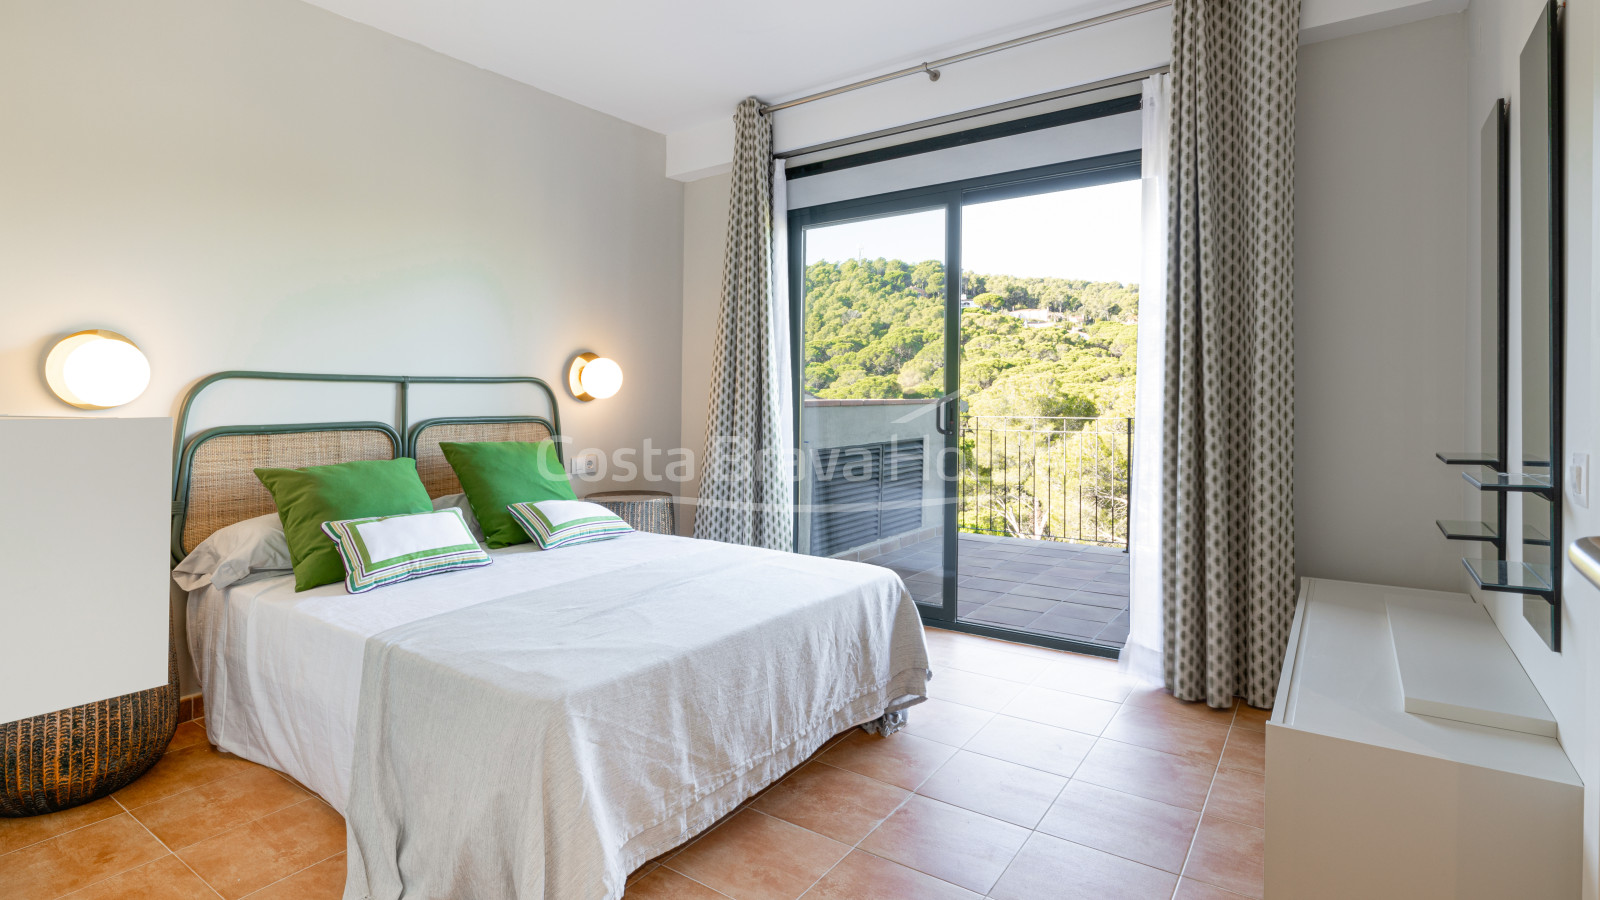 Appartement avec terrasse et piscine à Begur, à 5 minutes de la plage Sa Riera